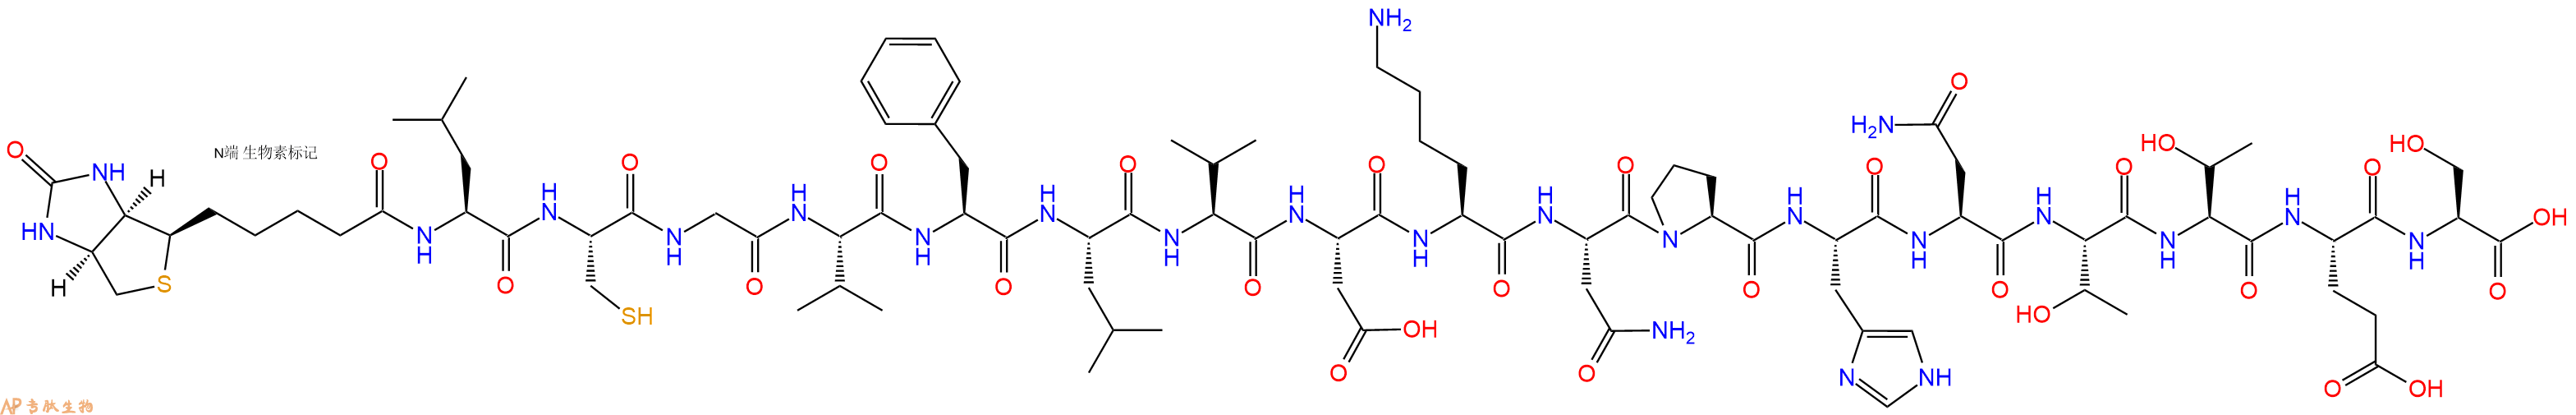 专肽生物产品Biotin-Leu-Cys-Gly-Val-Phe-Leu-Val-Asp-Lys-Asn-Pro